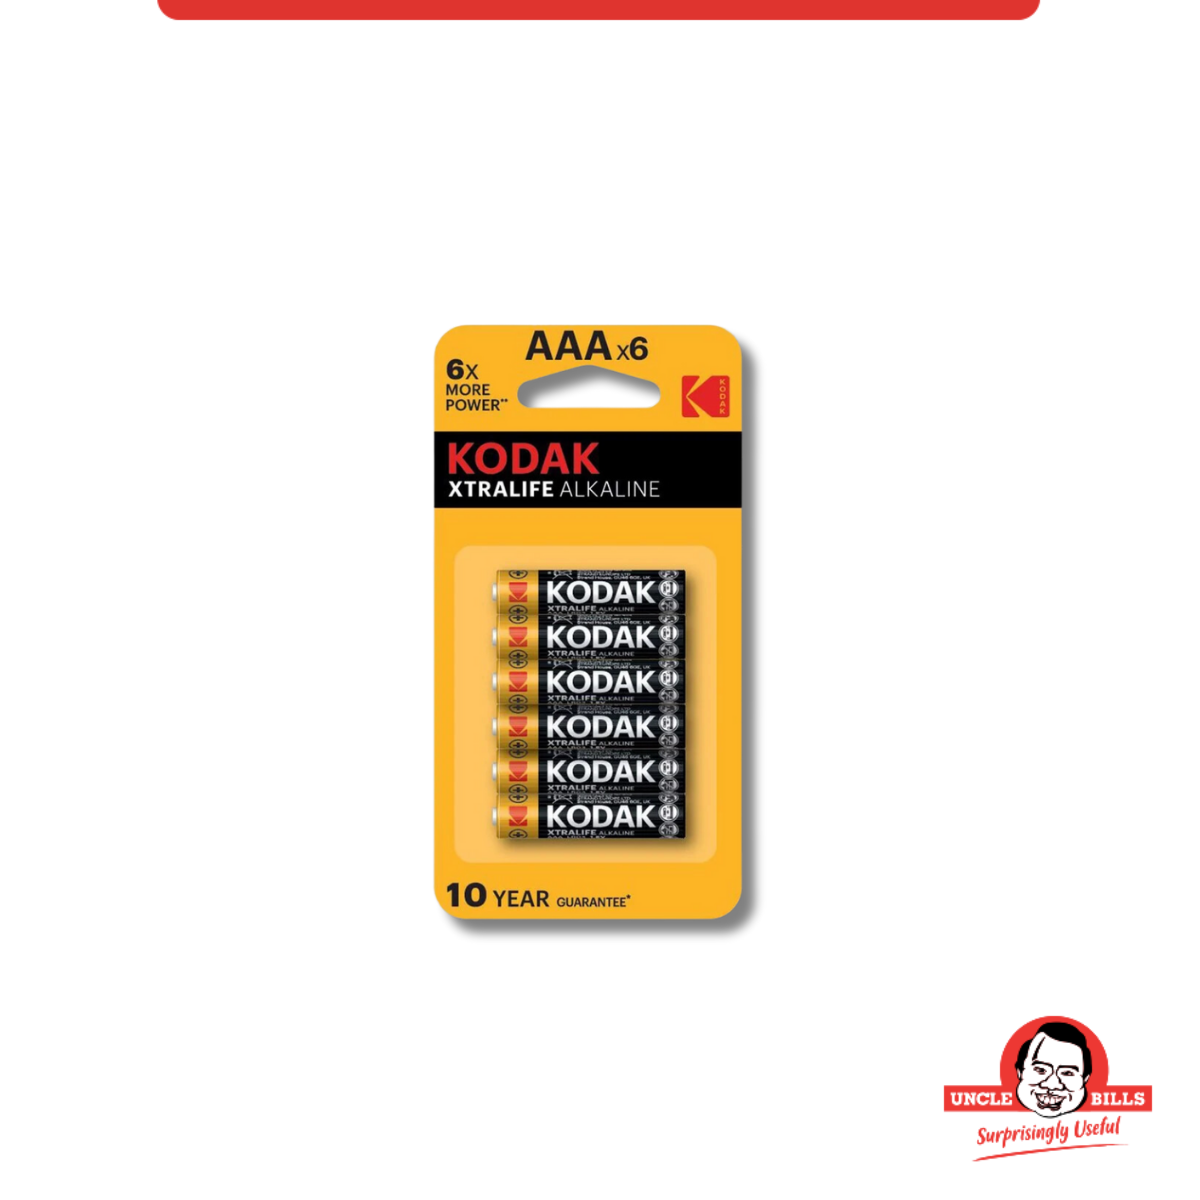 Pin Tiểu Kodak Alkaline AAA điện thế 1.5V Bộ 6 Pin Uncle Bills IB0217